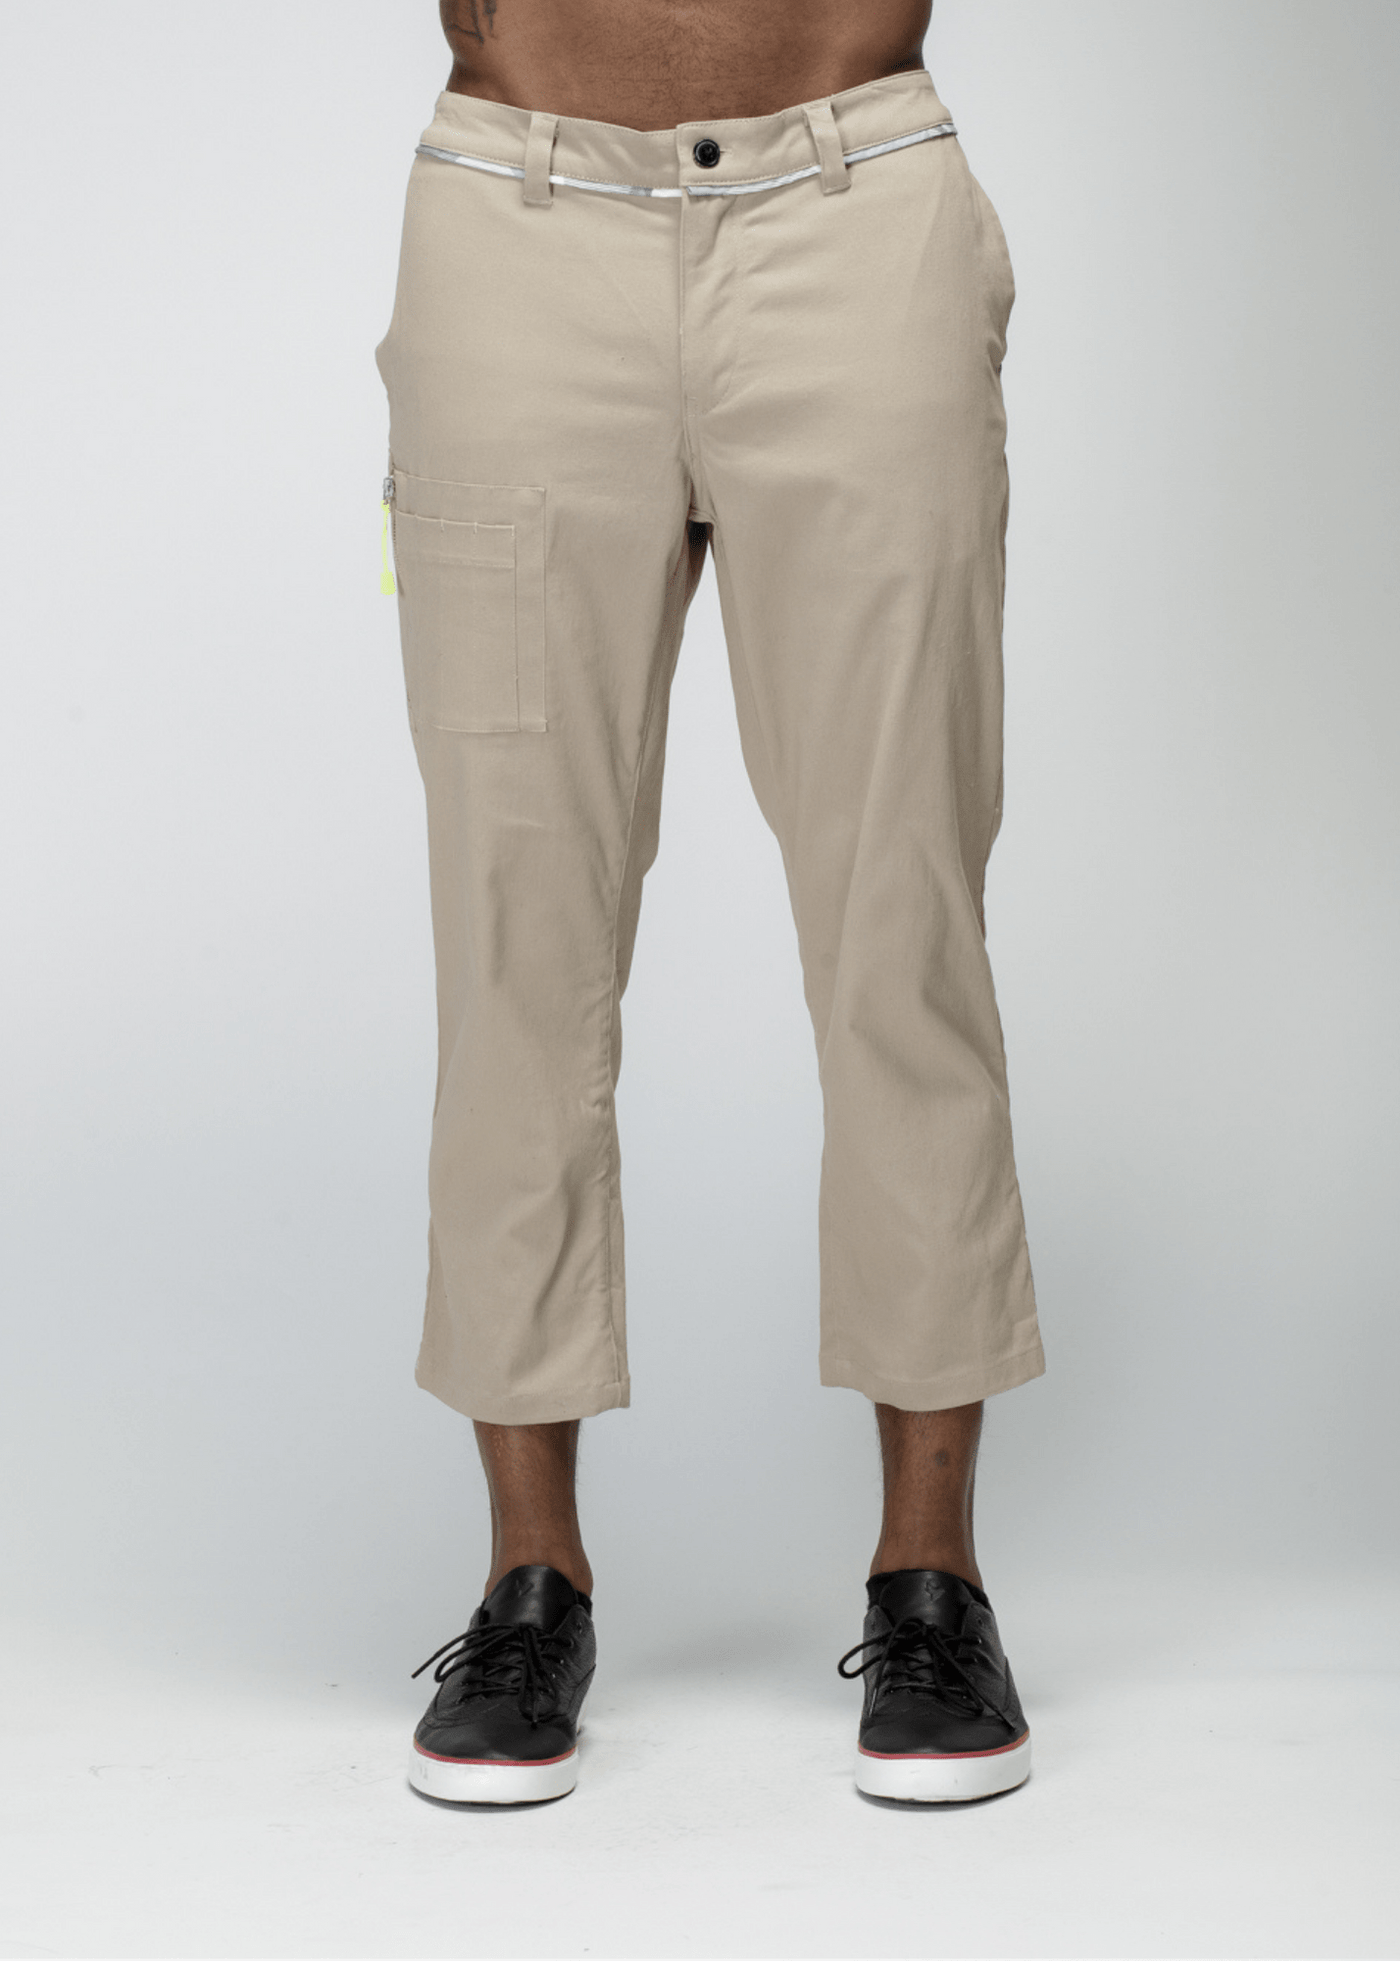 Konus Men's Cropped Side Zip Pants in Tan by Shop at Konus